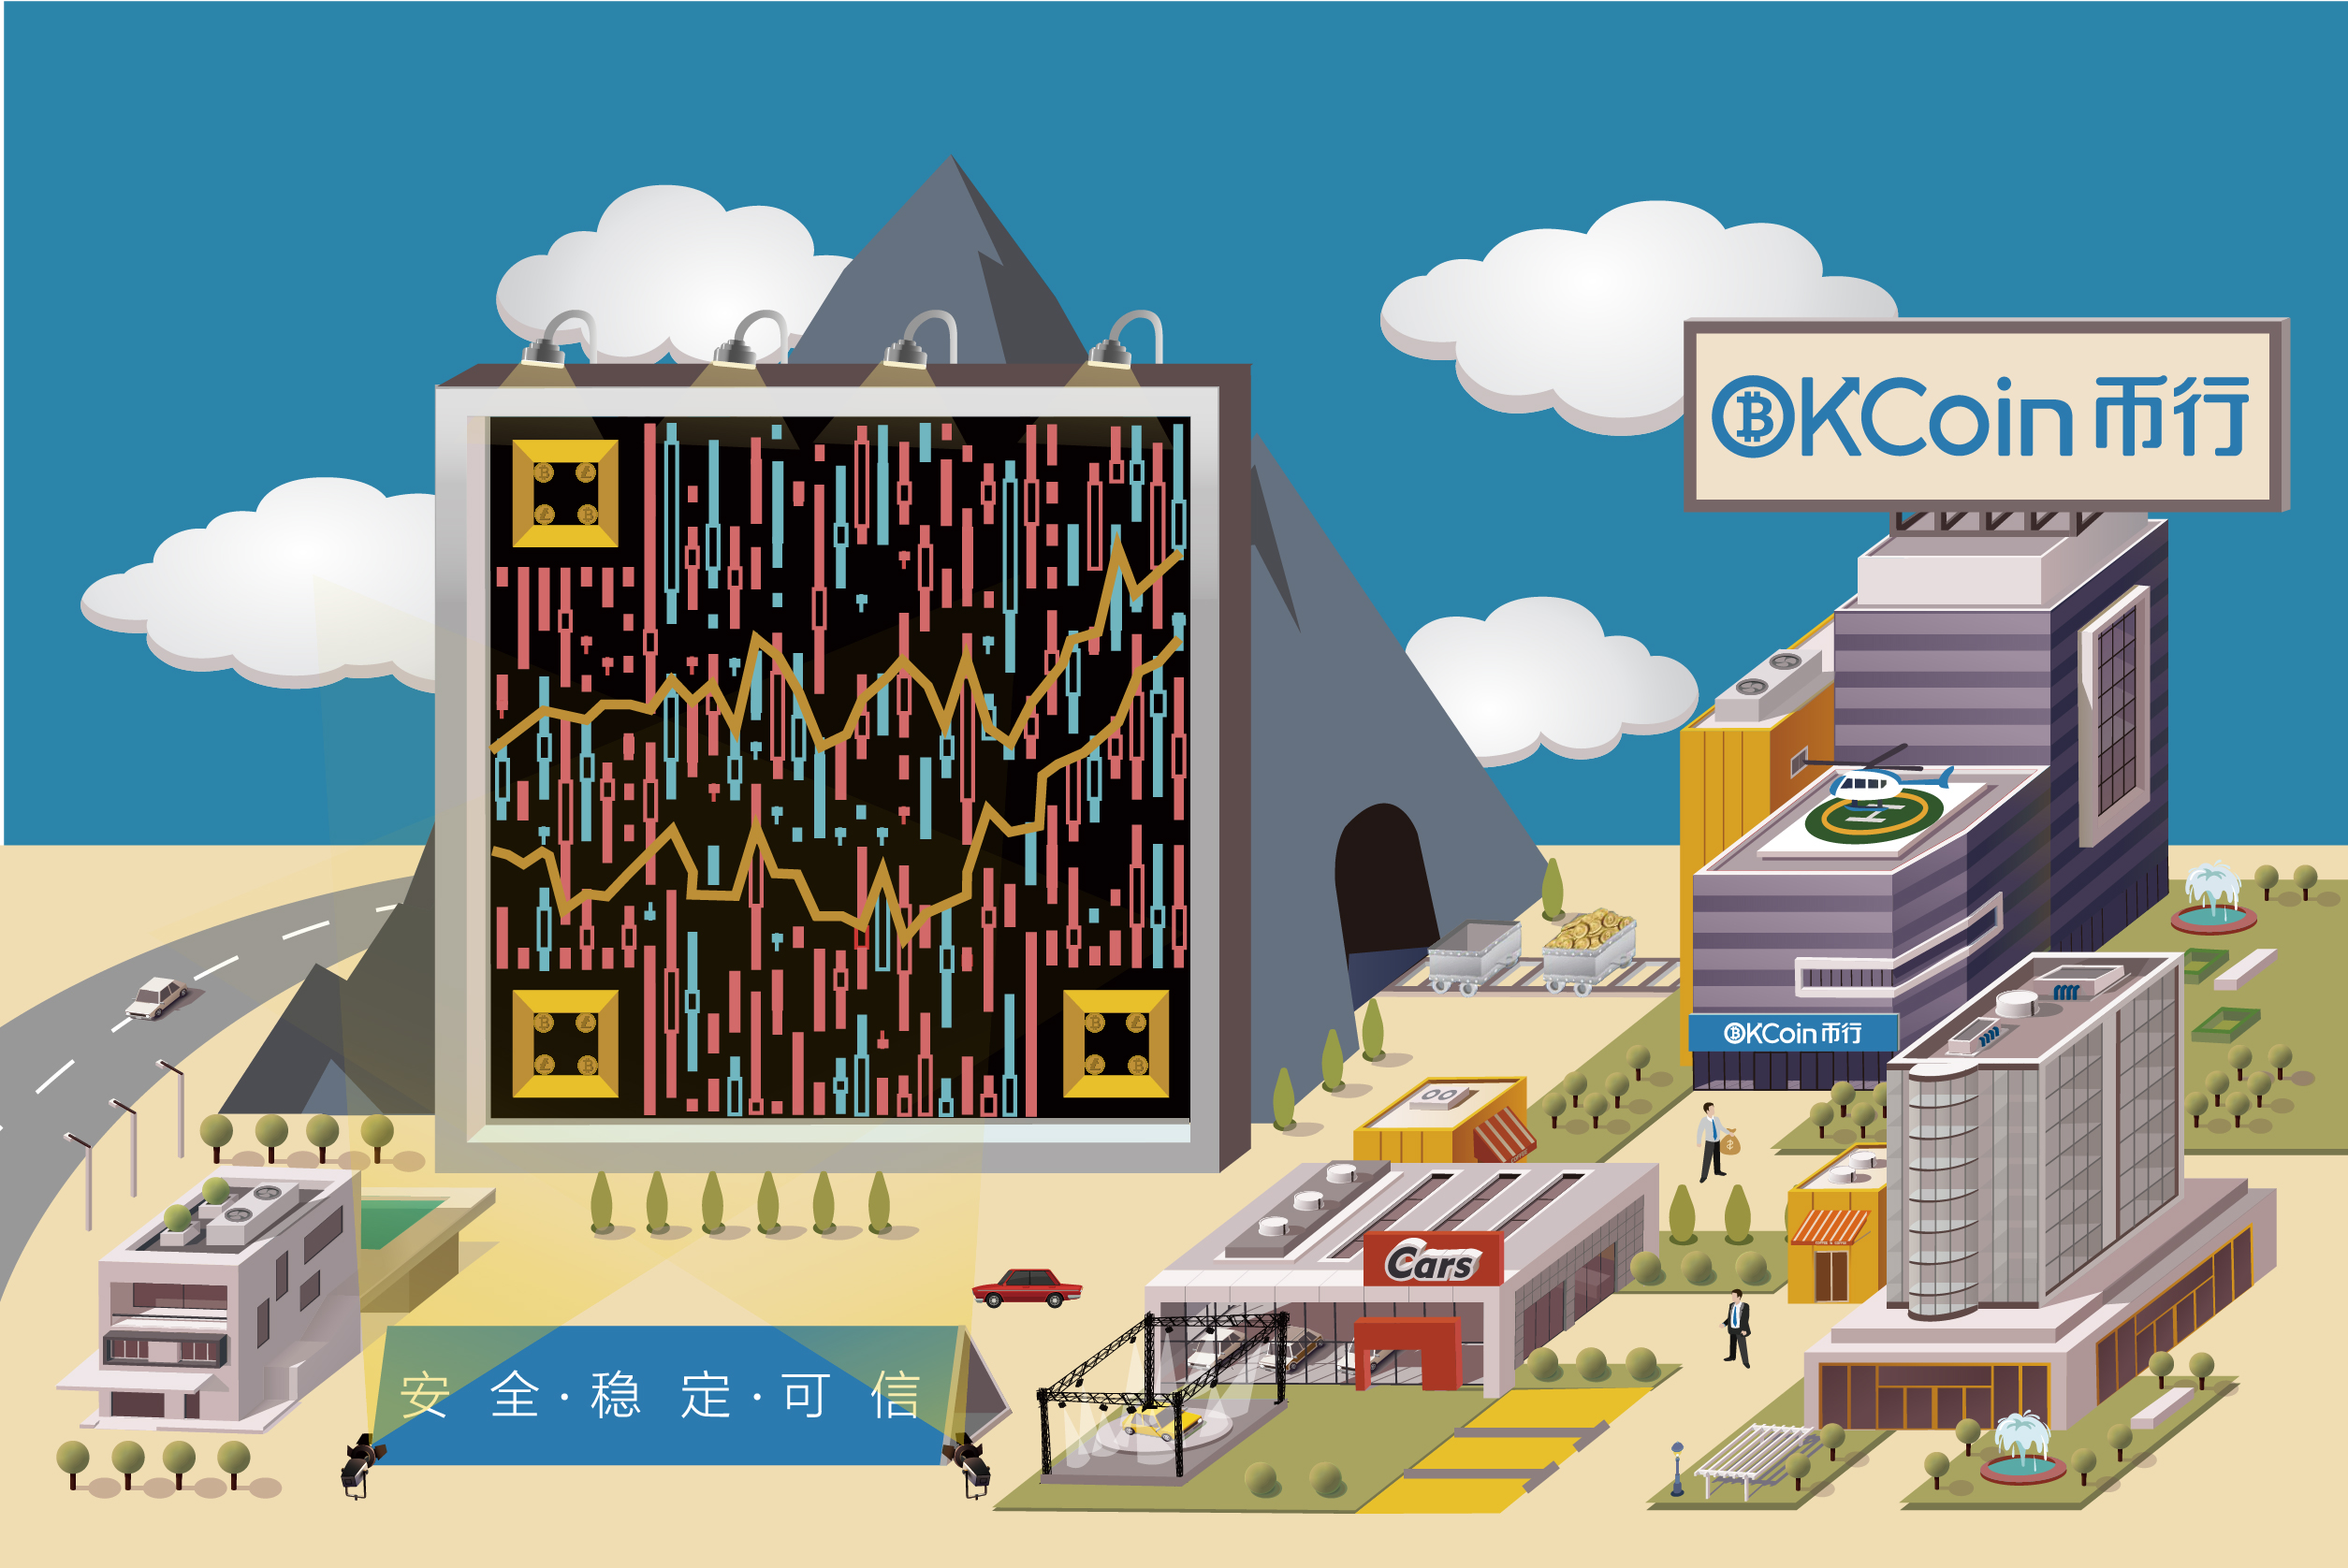 OKCOIN币行平面静态艺术二维码-创意二维码-第九工场设计外包